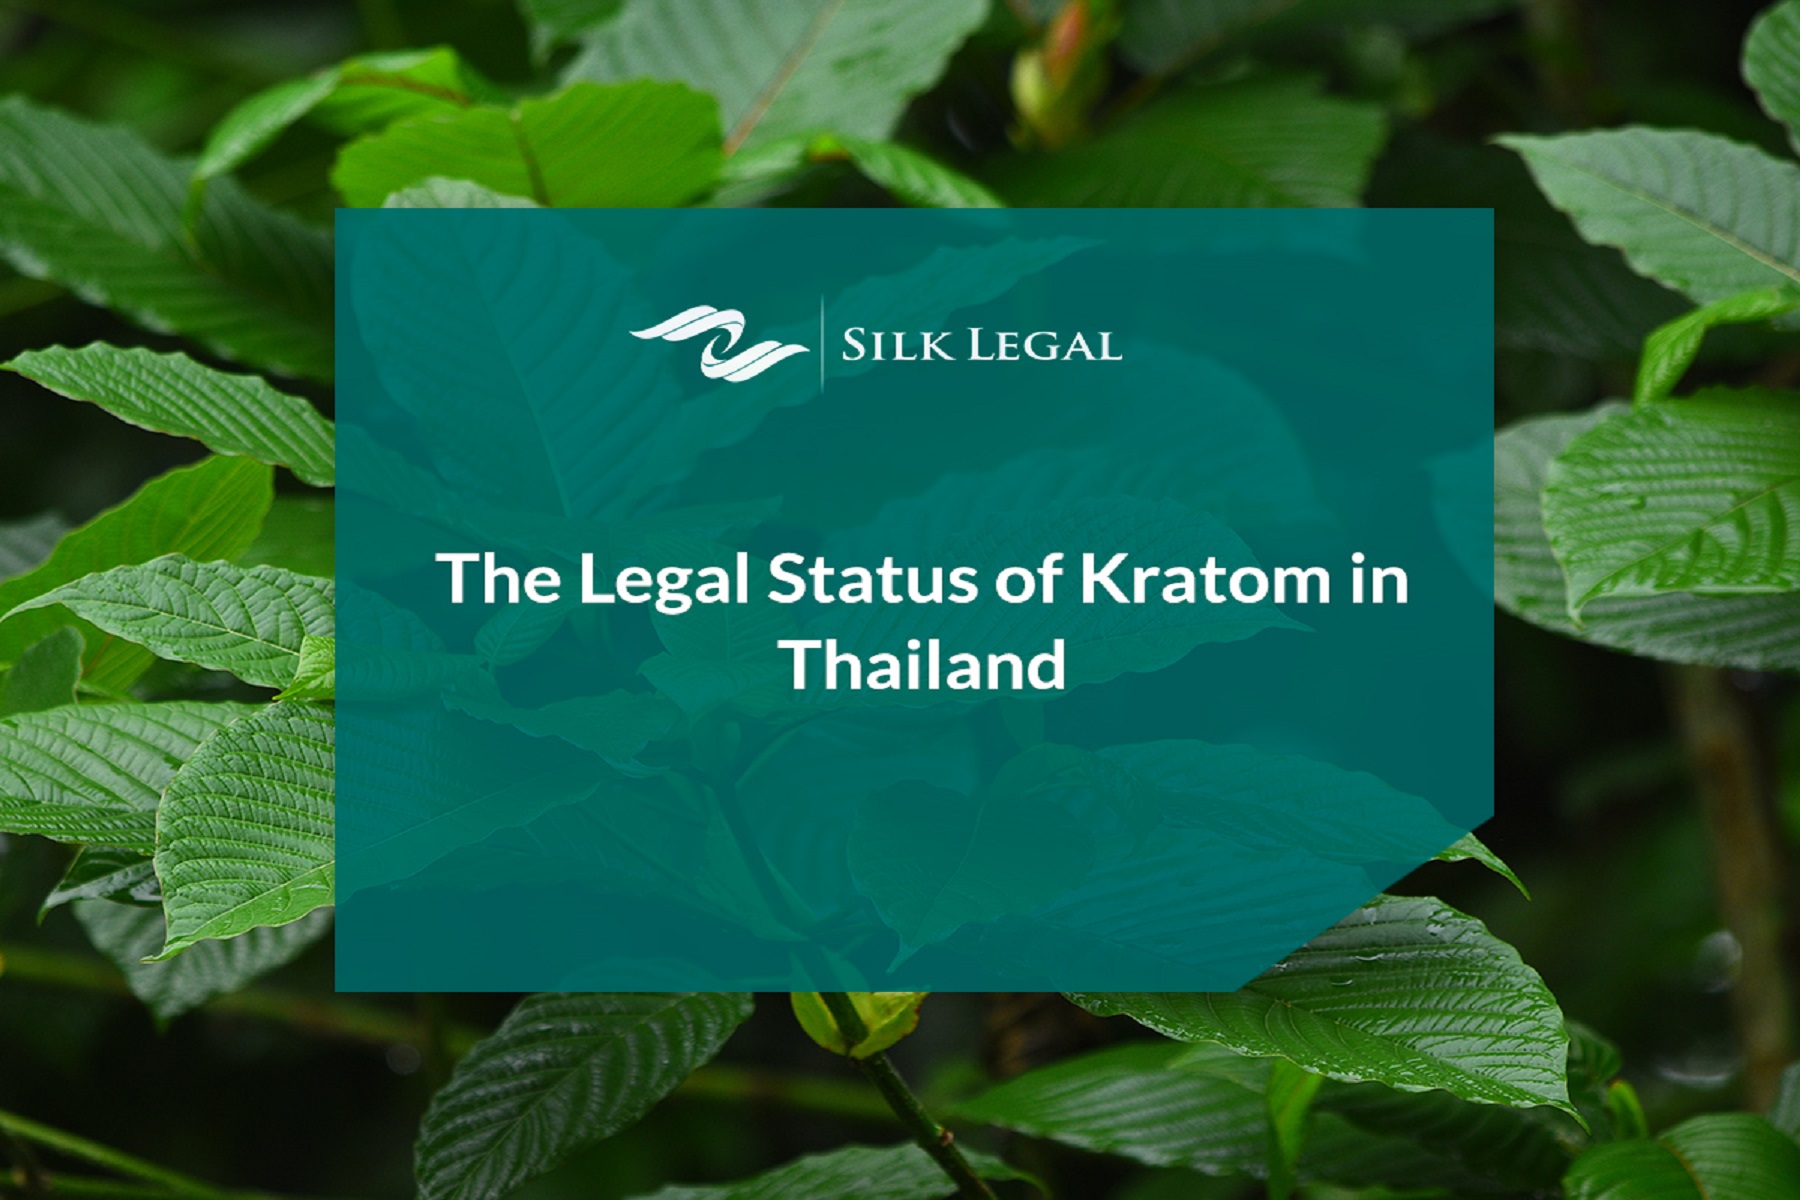 ΝΑ Ασία Ταϊλάνδη: Αφαιρεί το kratom από τη λίστα παράνομων ναρκωτικών